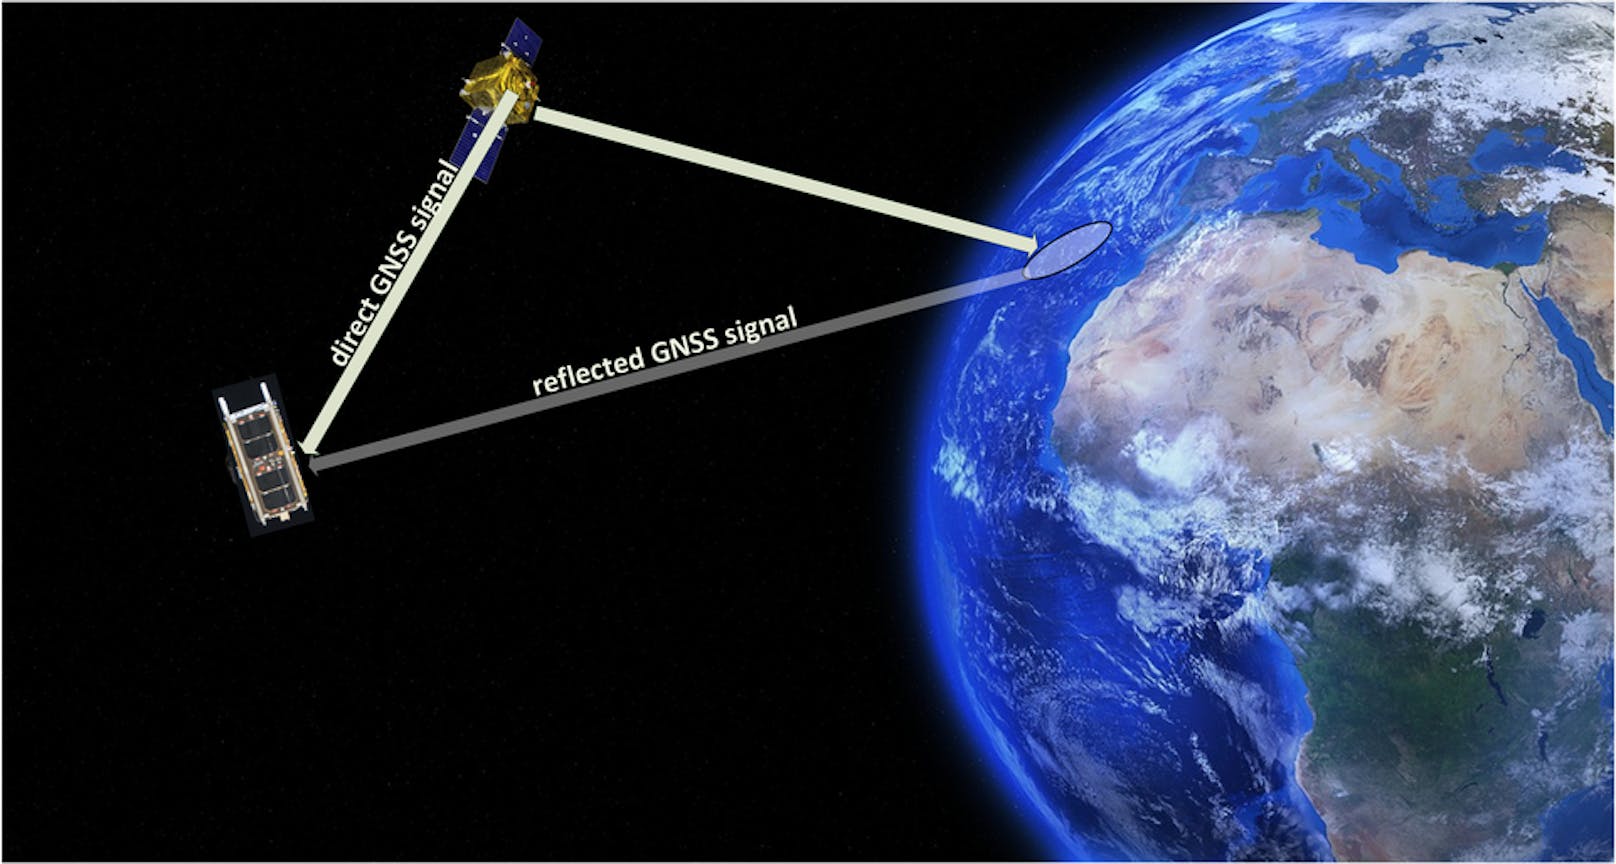 : Der PRETTY-Klimasatellit verwendet werden einerseits direkt im All übertragene Signale sowie Signale, die von der Erde reflektiert werden (GNSS ist eine Abkürzung für globale Navigationssatellitensysteme). 